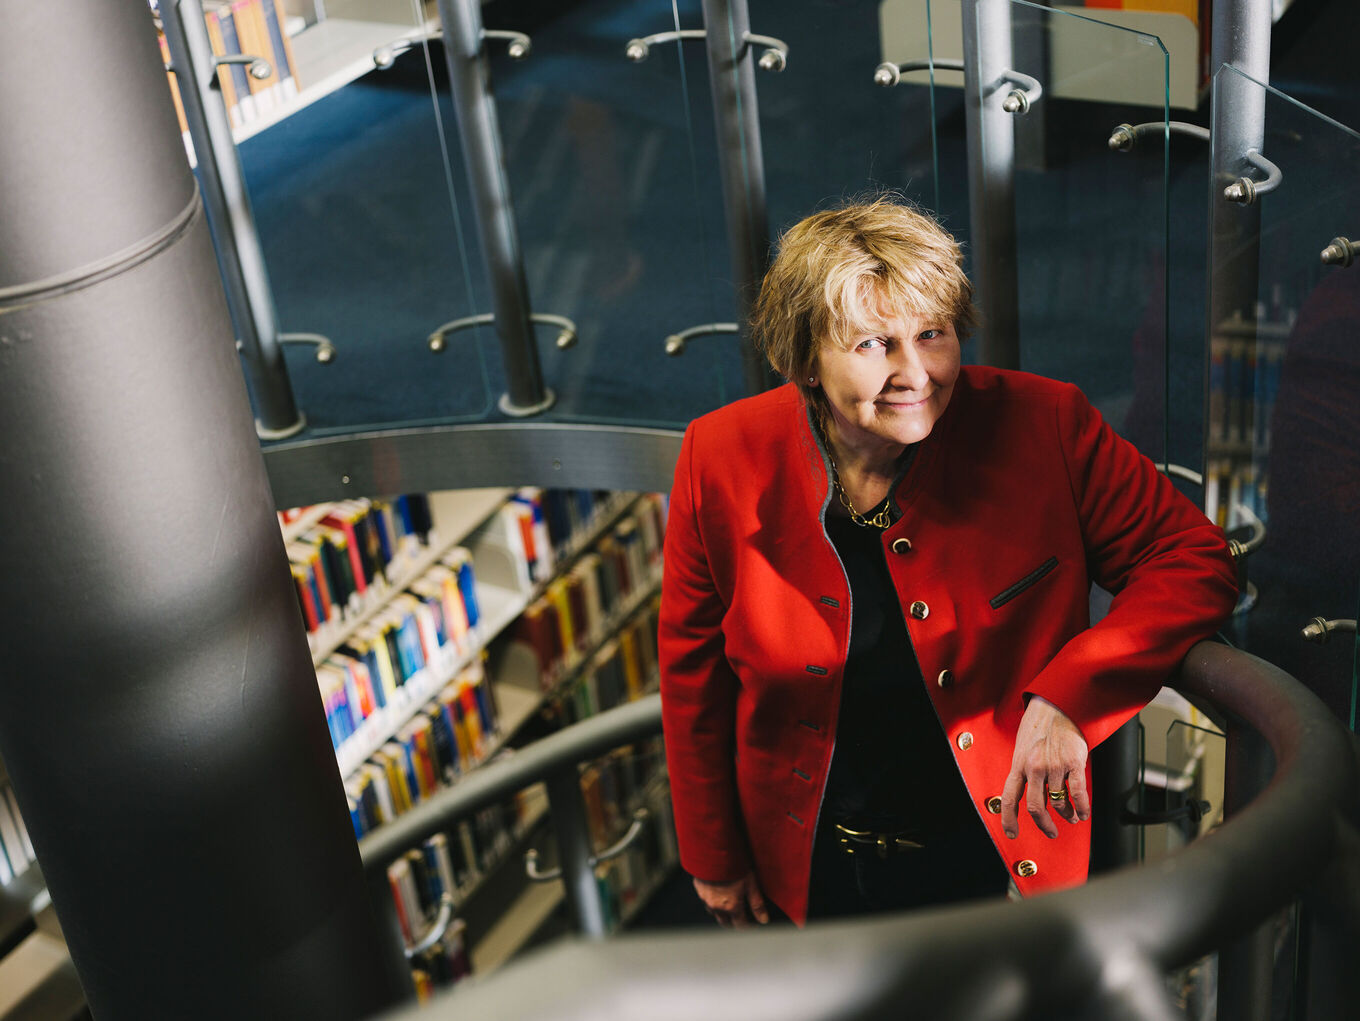 Michaela Brohm-Badry steht - mit Buchregalen im Hintergrund - auf der Treppe einer Bibliothek und lächelt freundlich